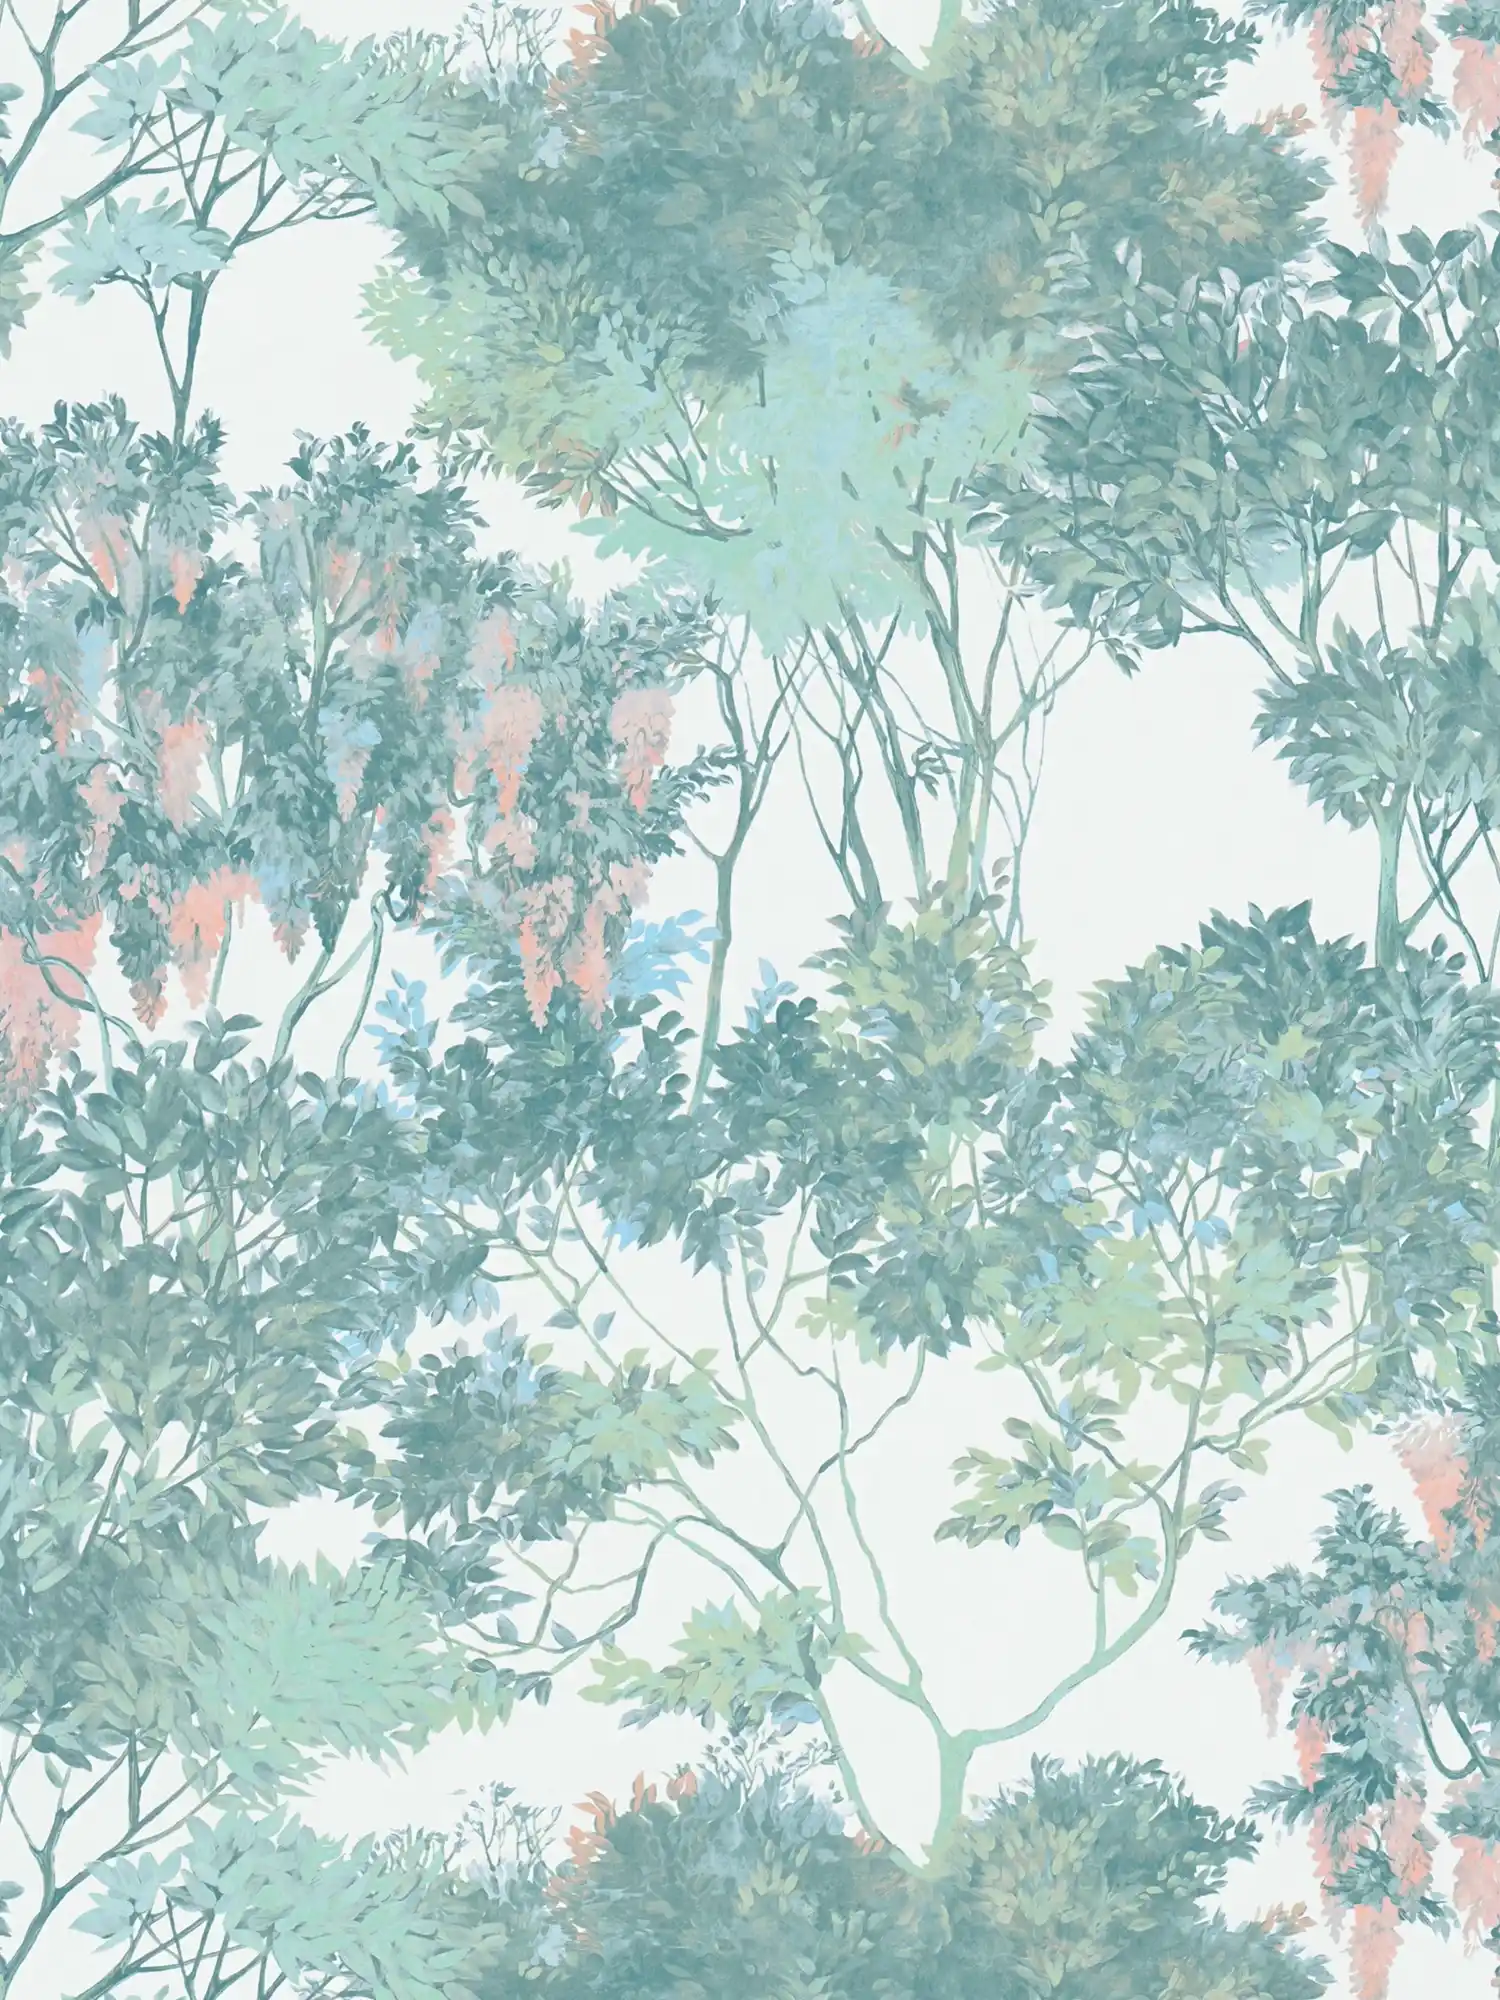 Vliesbehang in junglestijl met bomen - kleurrijk, groen, wit
